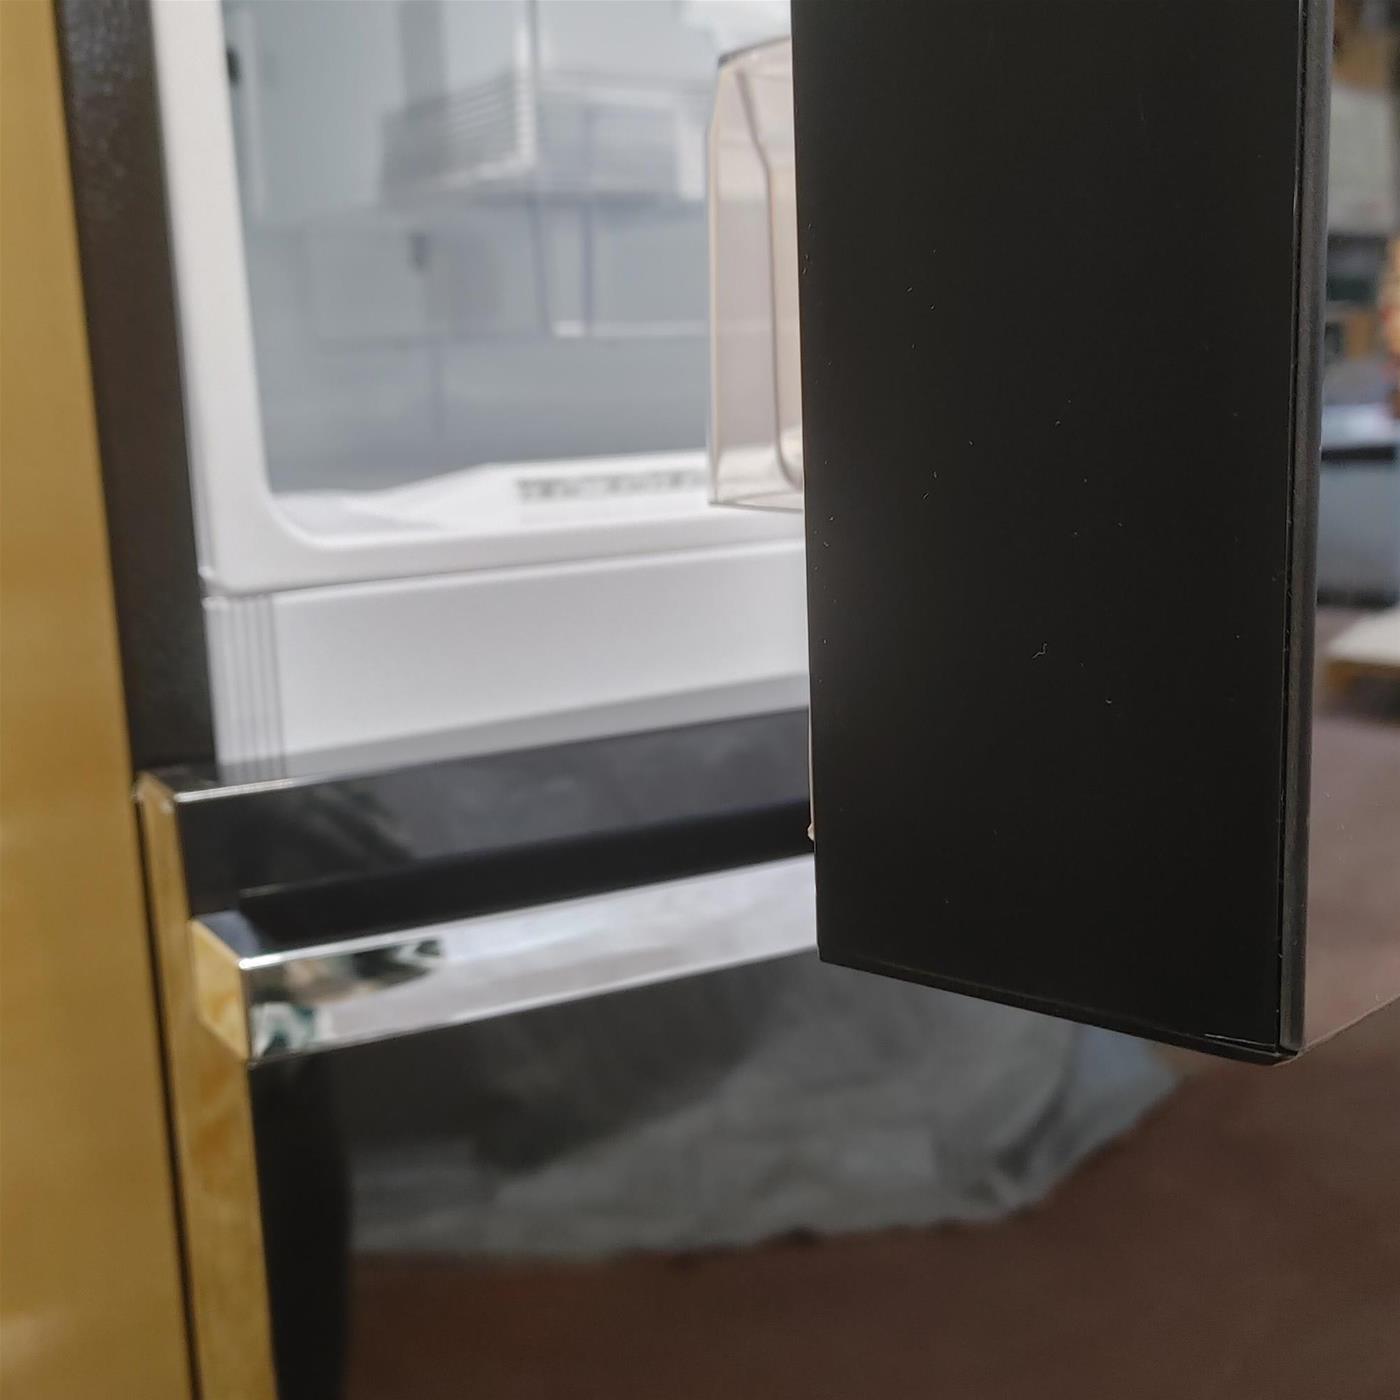 LG GTB744BMBZD frigorifero con congelatore Libera installazione 506 LE Nero